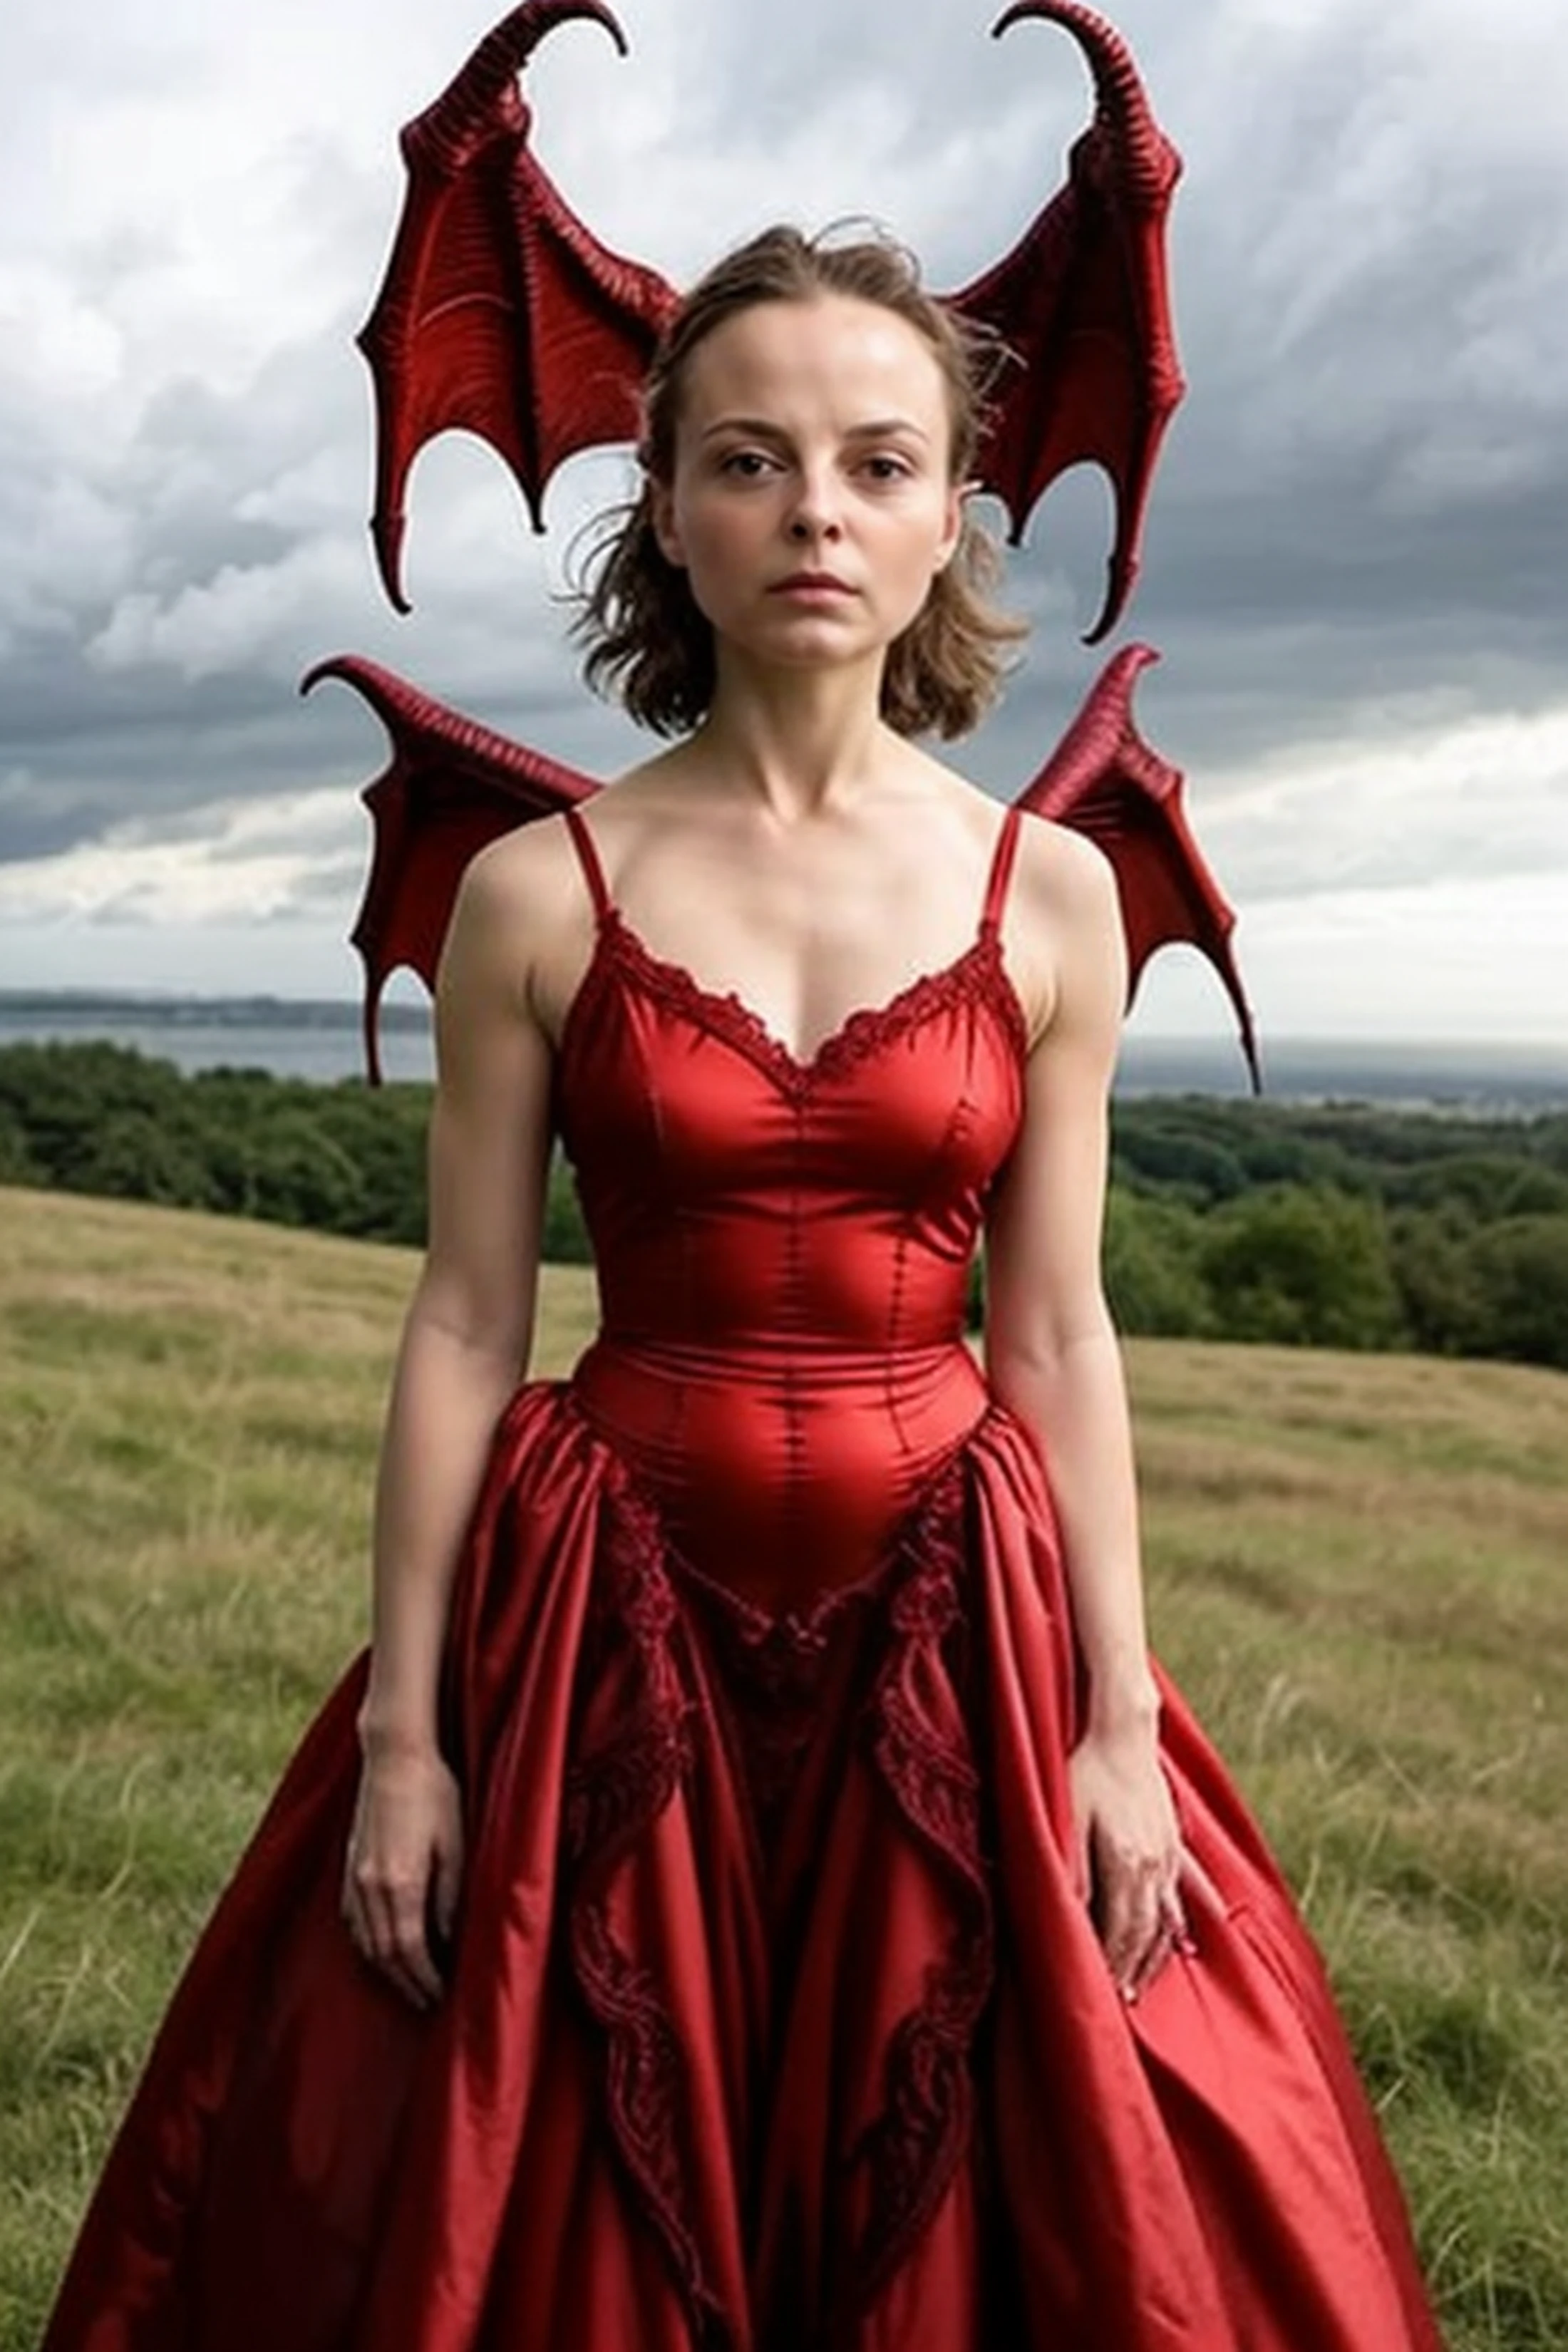 absurdres 超现实、精致的专业照片，20 岁的 AnastasiaPronina 身穿彩色迷你连衣裙, 单腿站在空旷的田野上，暴风雨从东边袭来,
d3m0ndr3ss, 长裙, 红色礼服, 恶魔之翼